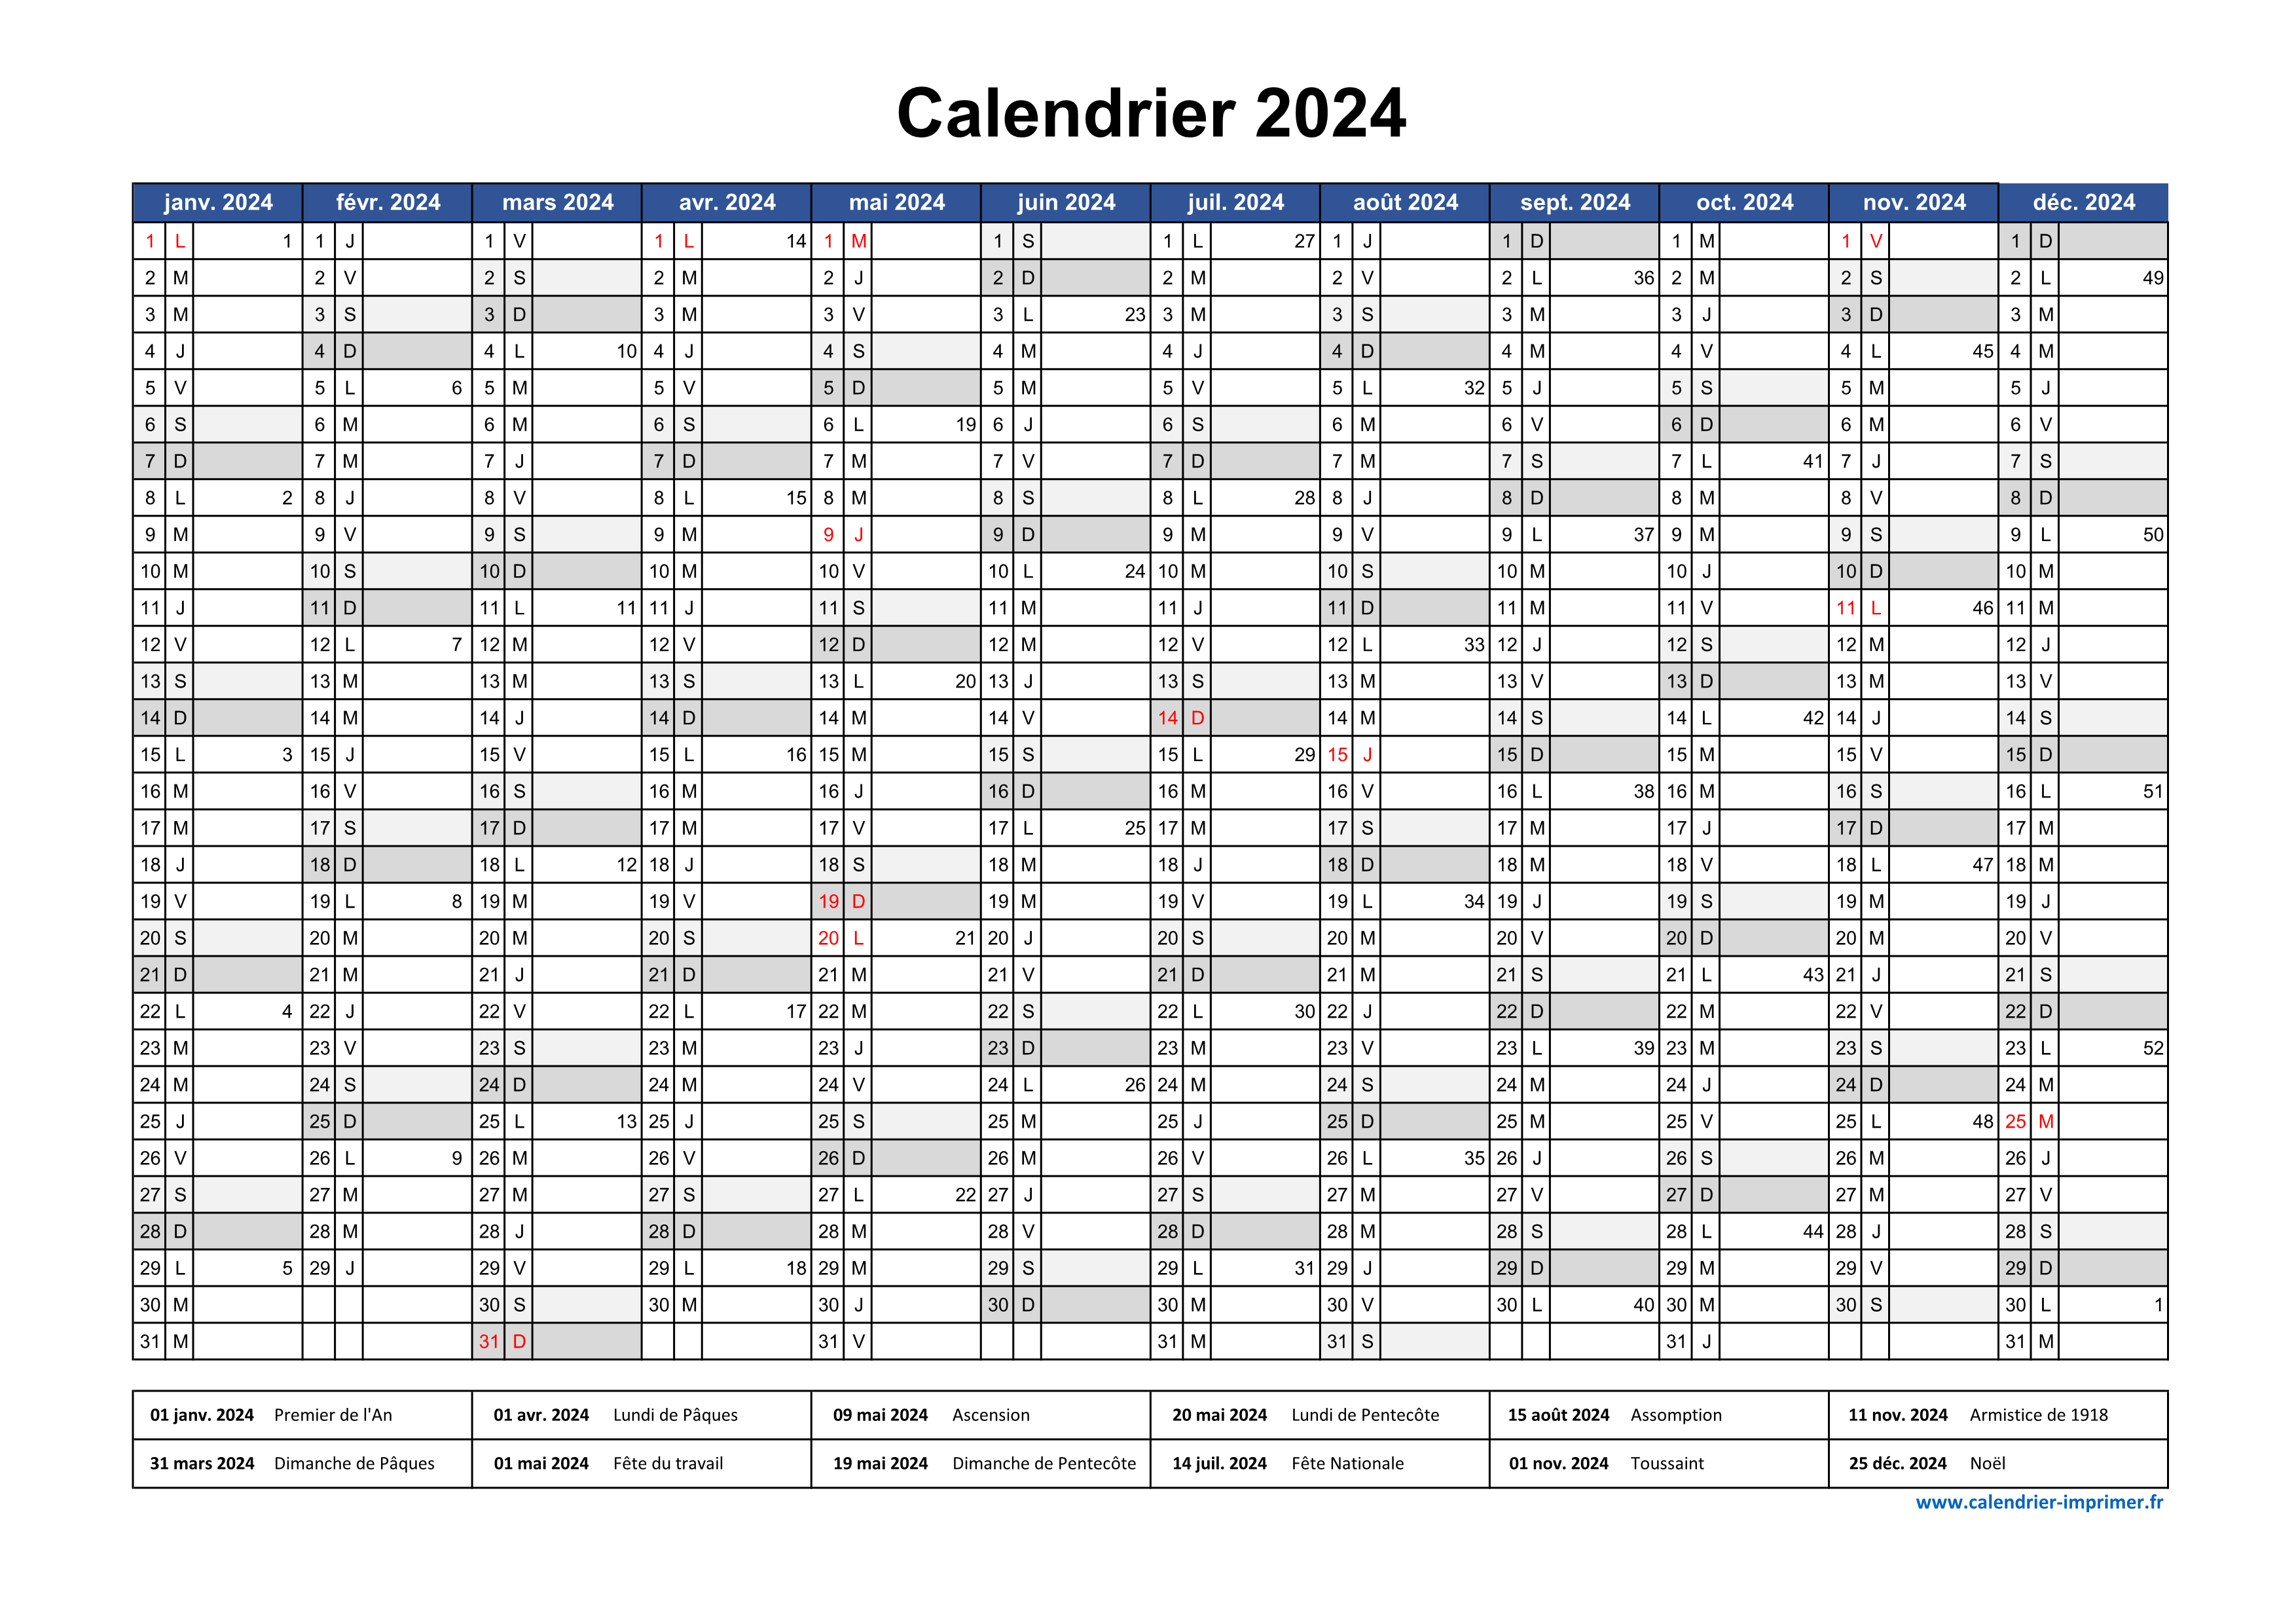 Calendrier 2024 à imprimer gratuit